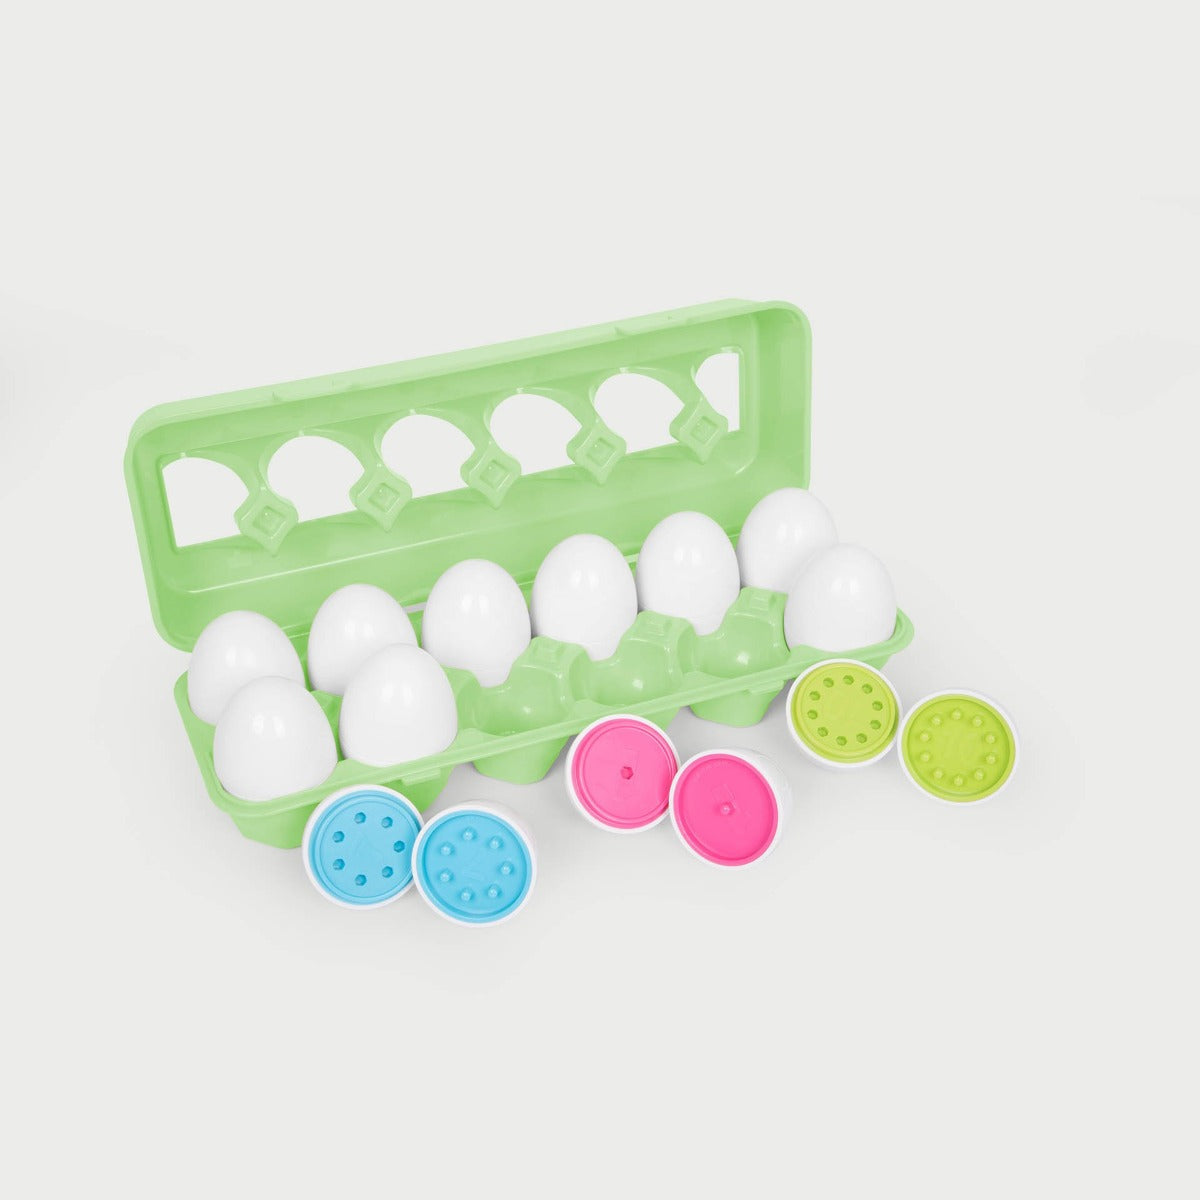 Colour Match Eggs - Pk12